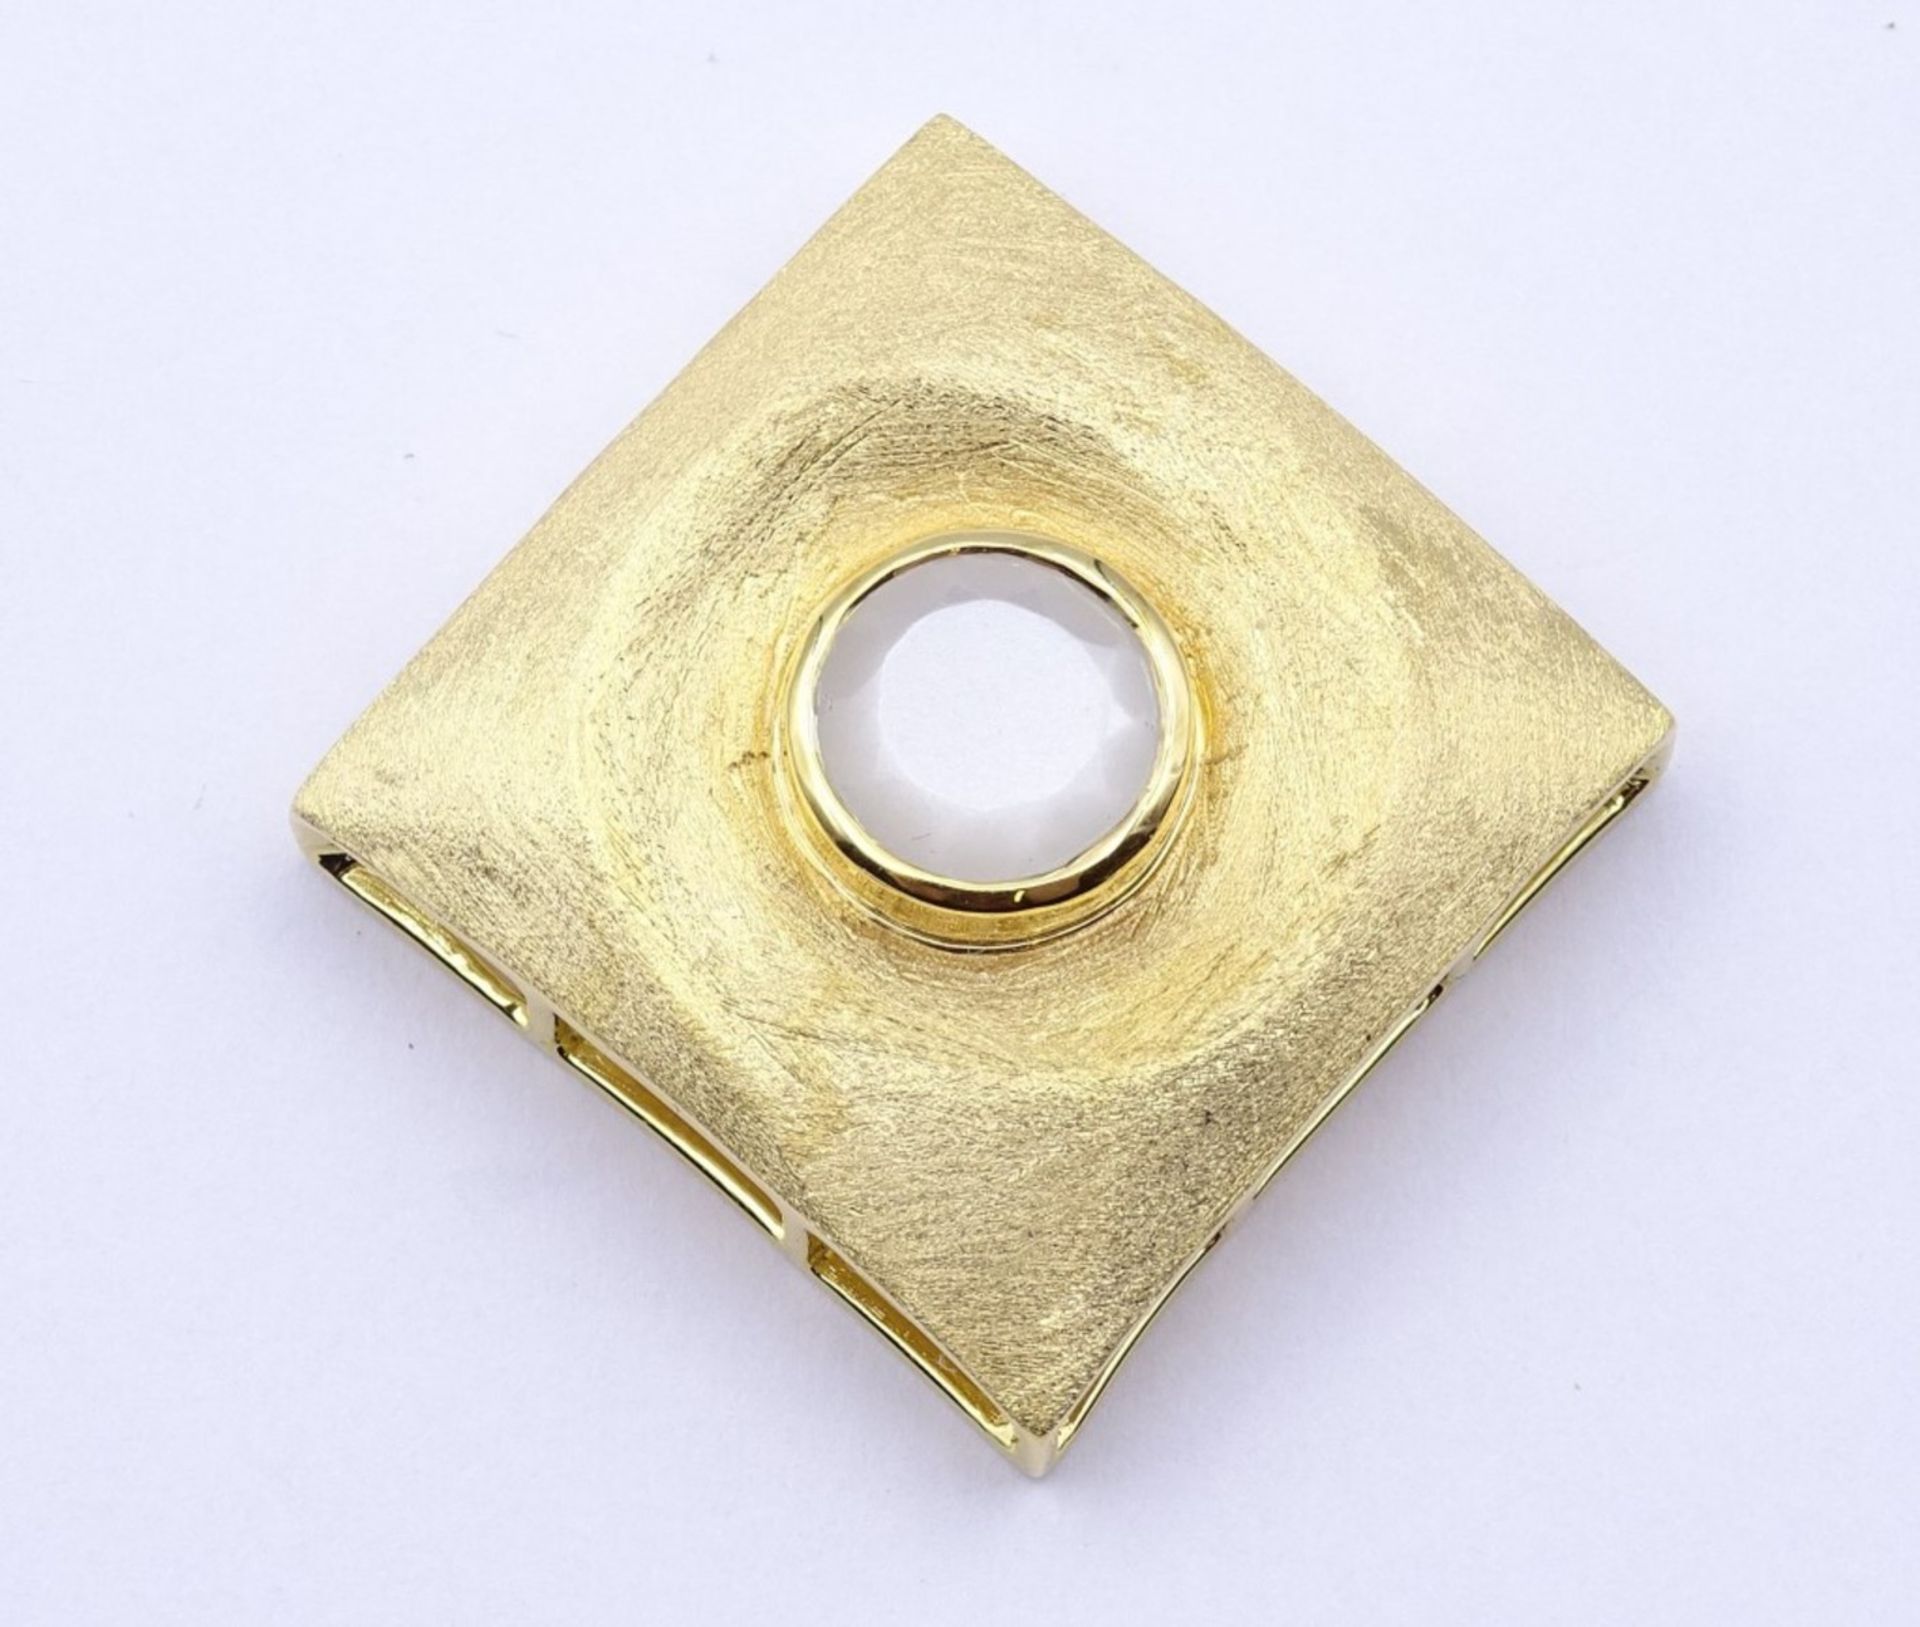 Ketten Anhänger Sterling Silber 0.925 vergoldet mit einen rund facc. Quartz, 2,9x 2,9cm, 14,6 g.sig.